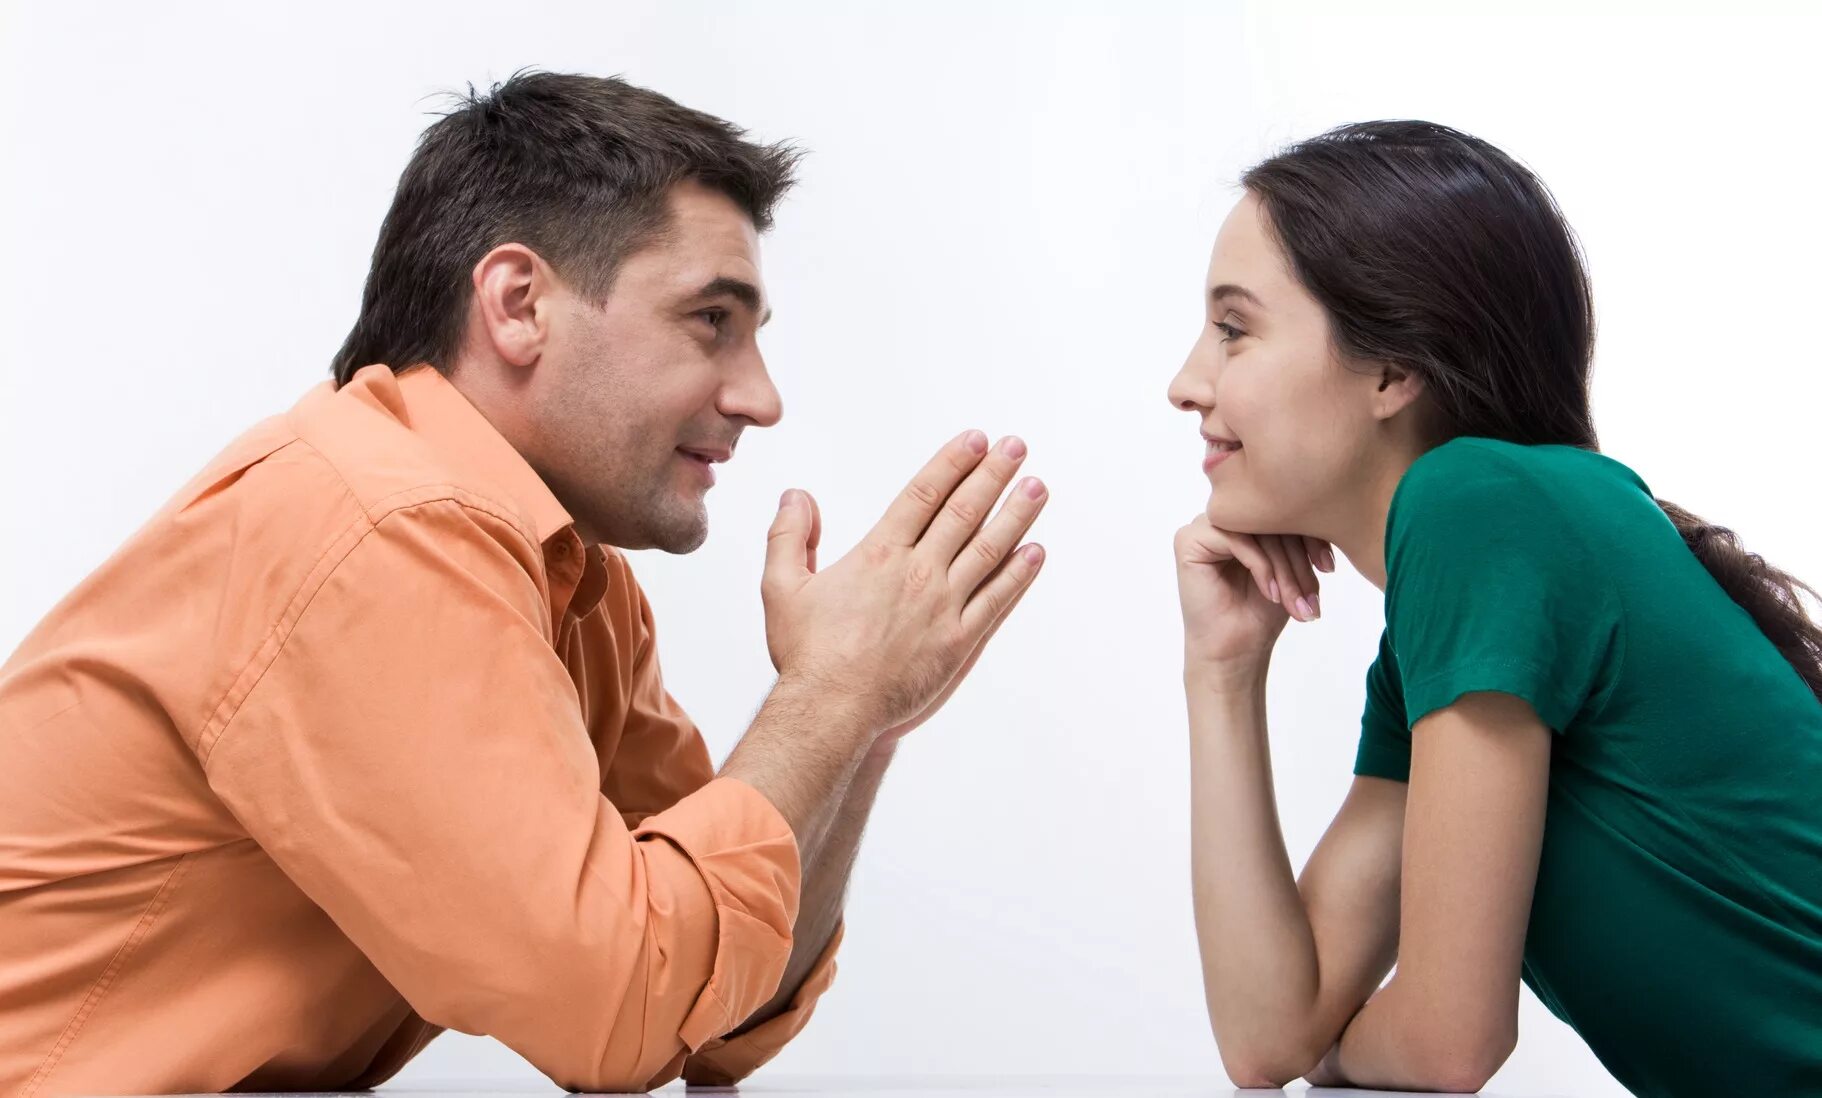 Мужчина и женщина урок. Разговор между мужчиной и женщиной. Общение людей. Взаимопонимание в общении. Беседа мужчины и женщины.